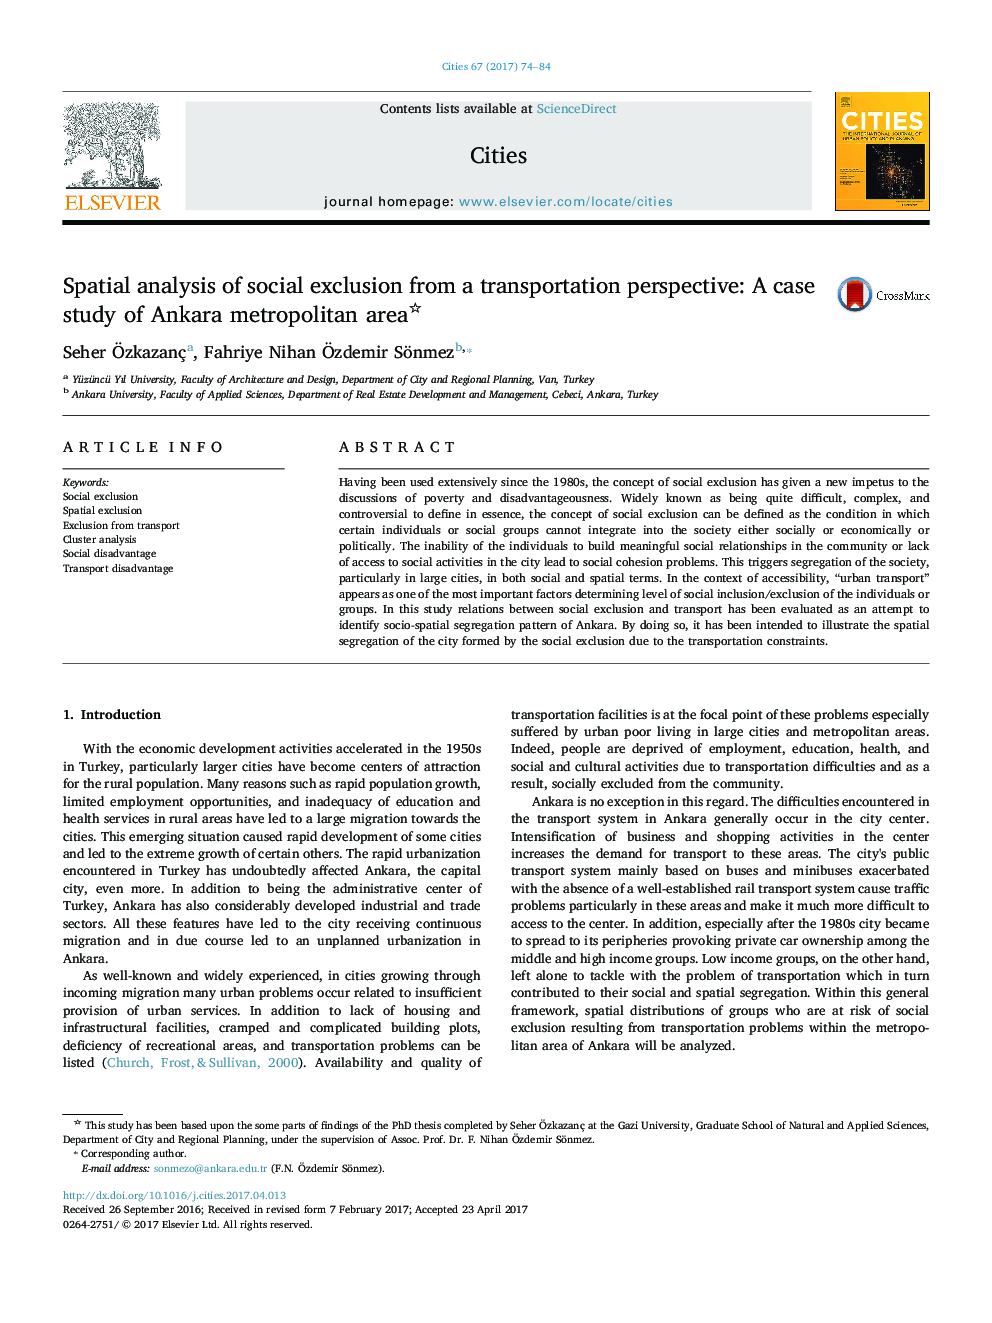 تجزیه و تحلیل فضایی جدایی اجتماعی از دیدگاه حمل و نقل: مطالعه موردی منطقه شهری آنکارا 